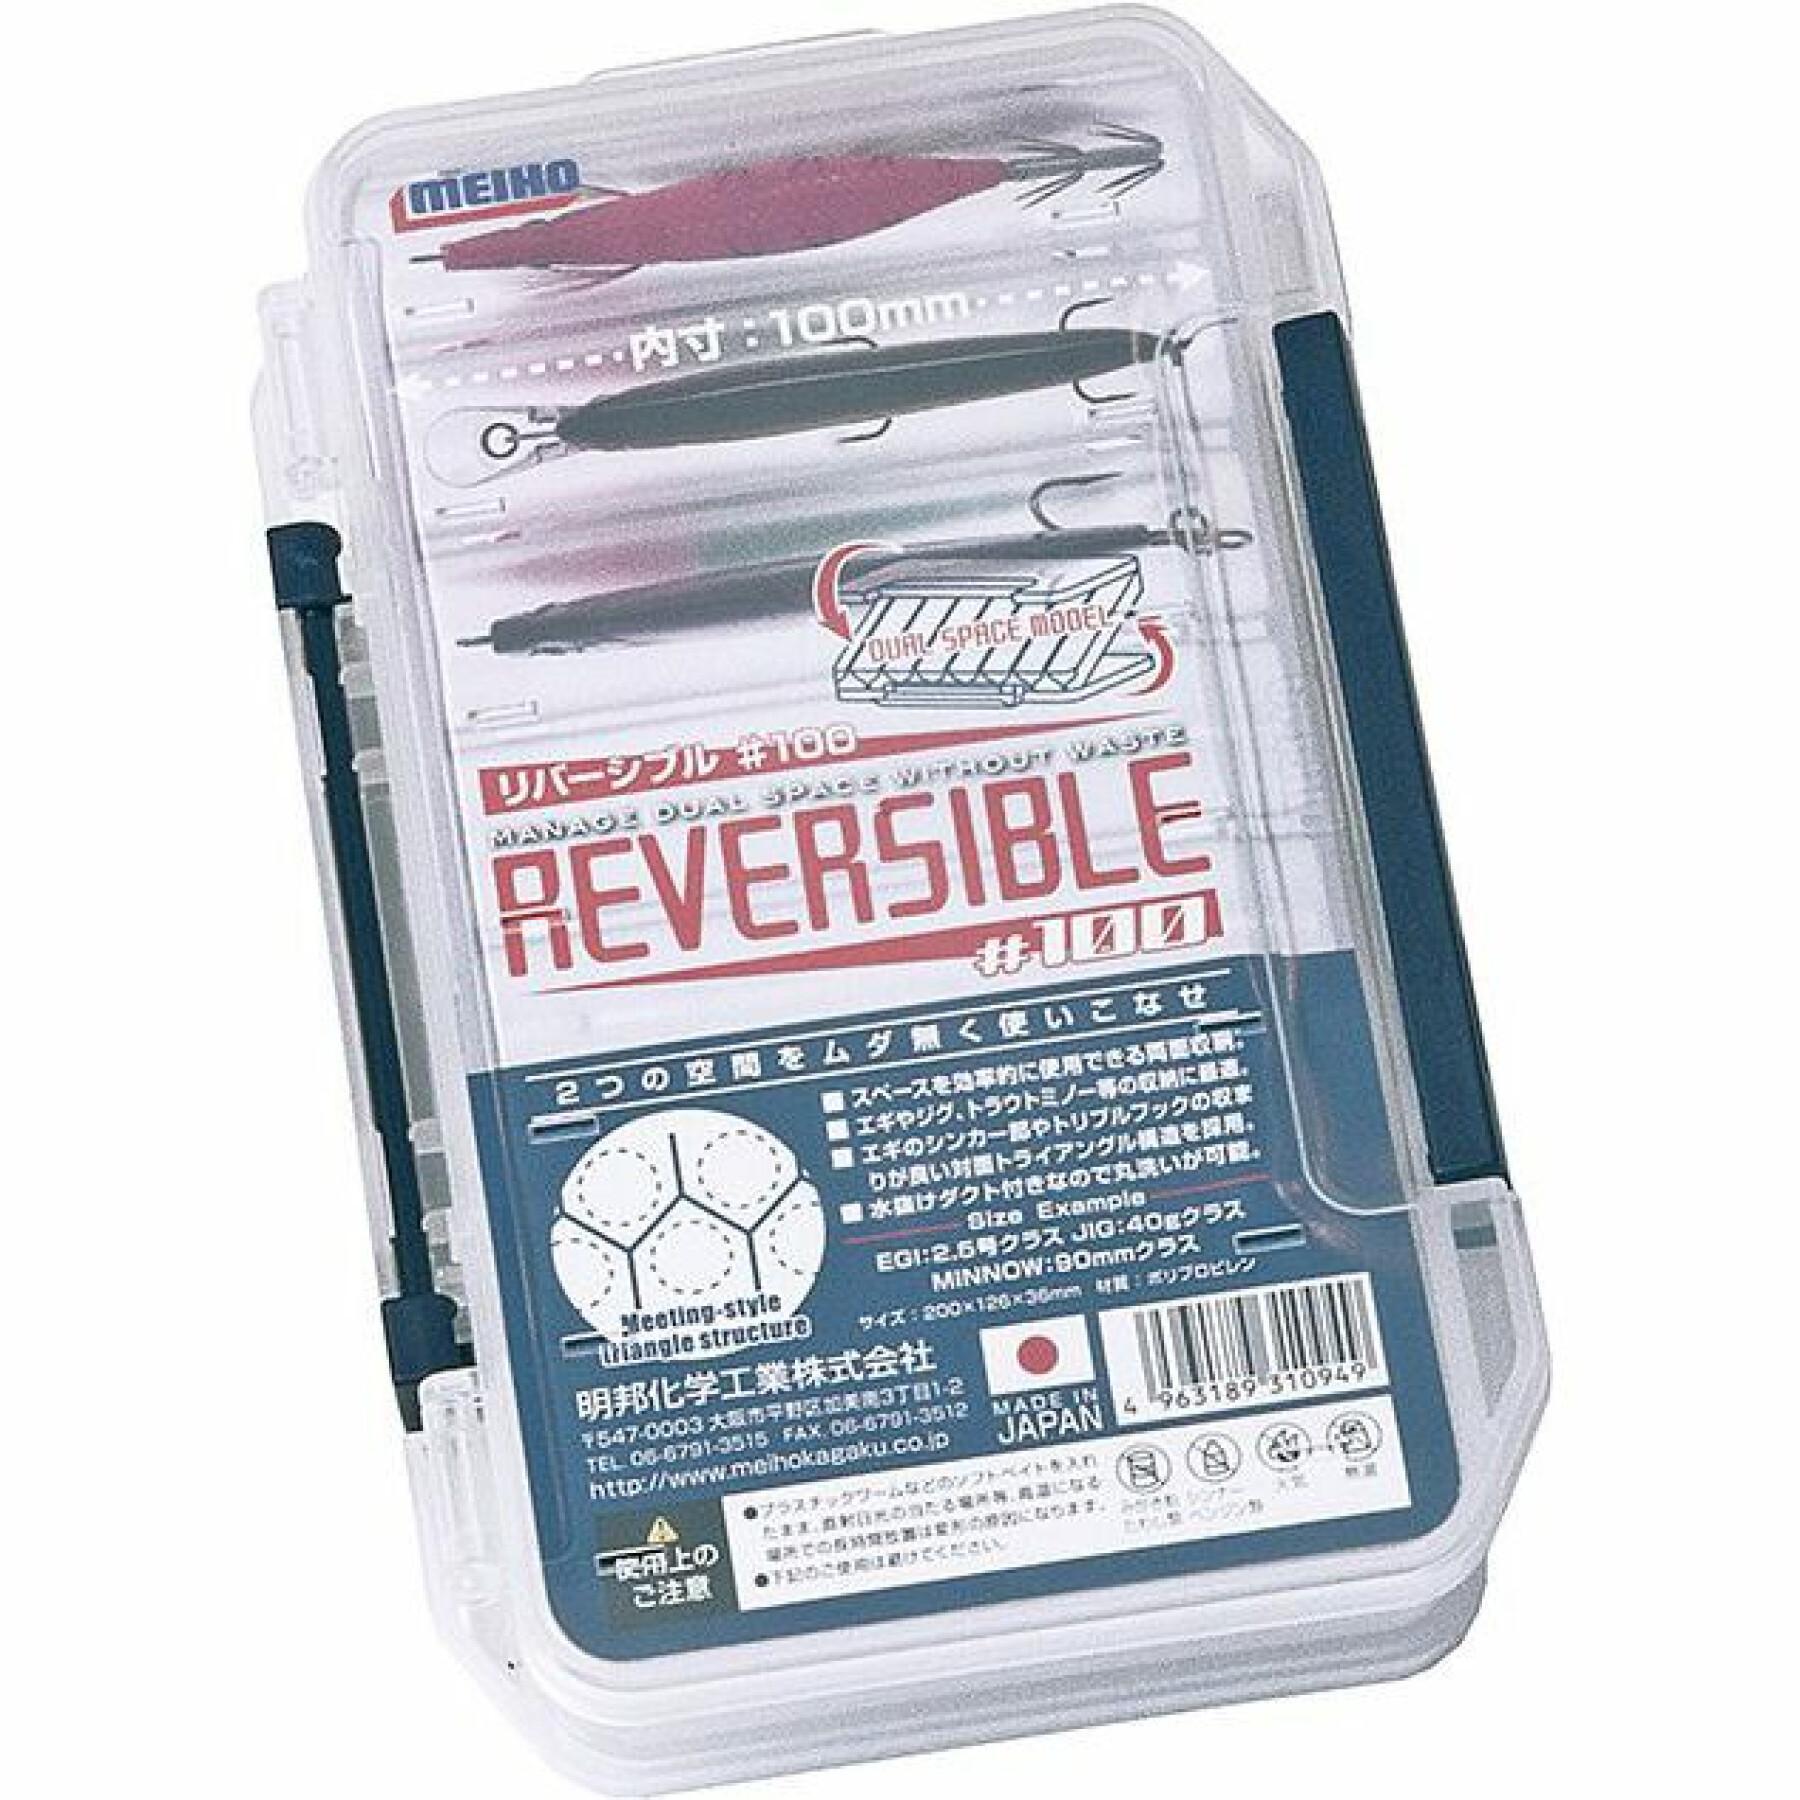 Schachteln Meiho Reversible 100 Clear